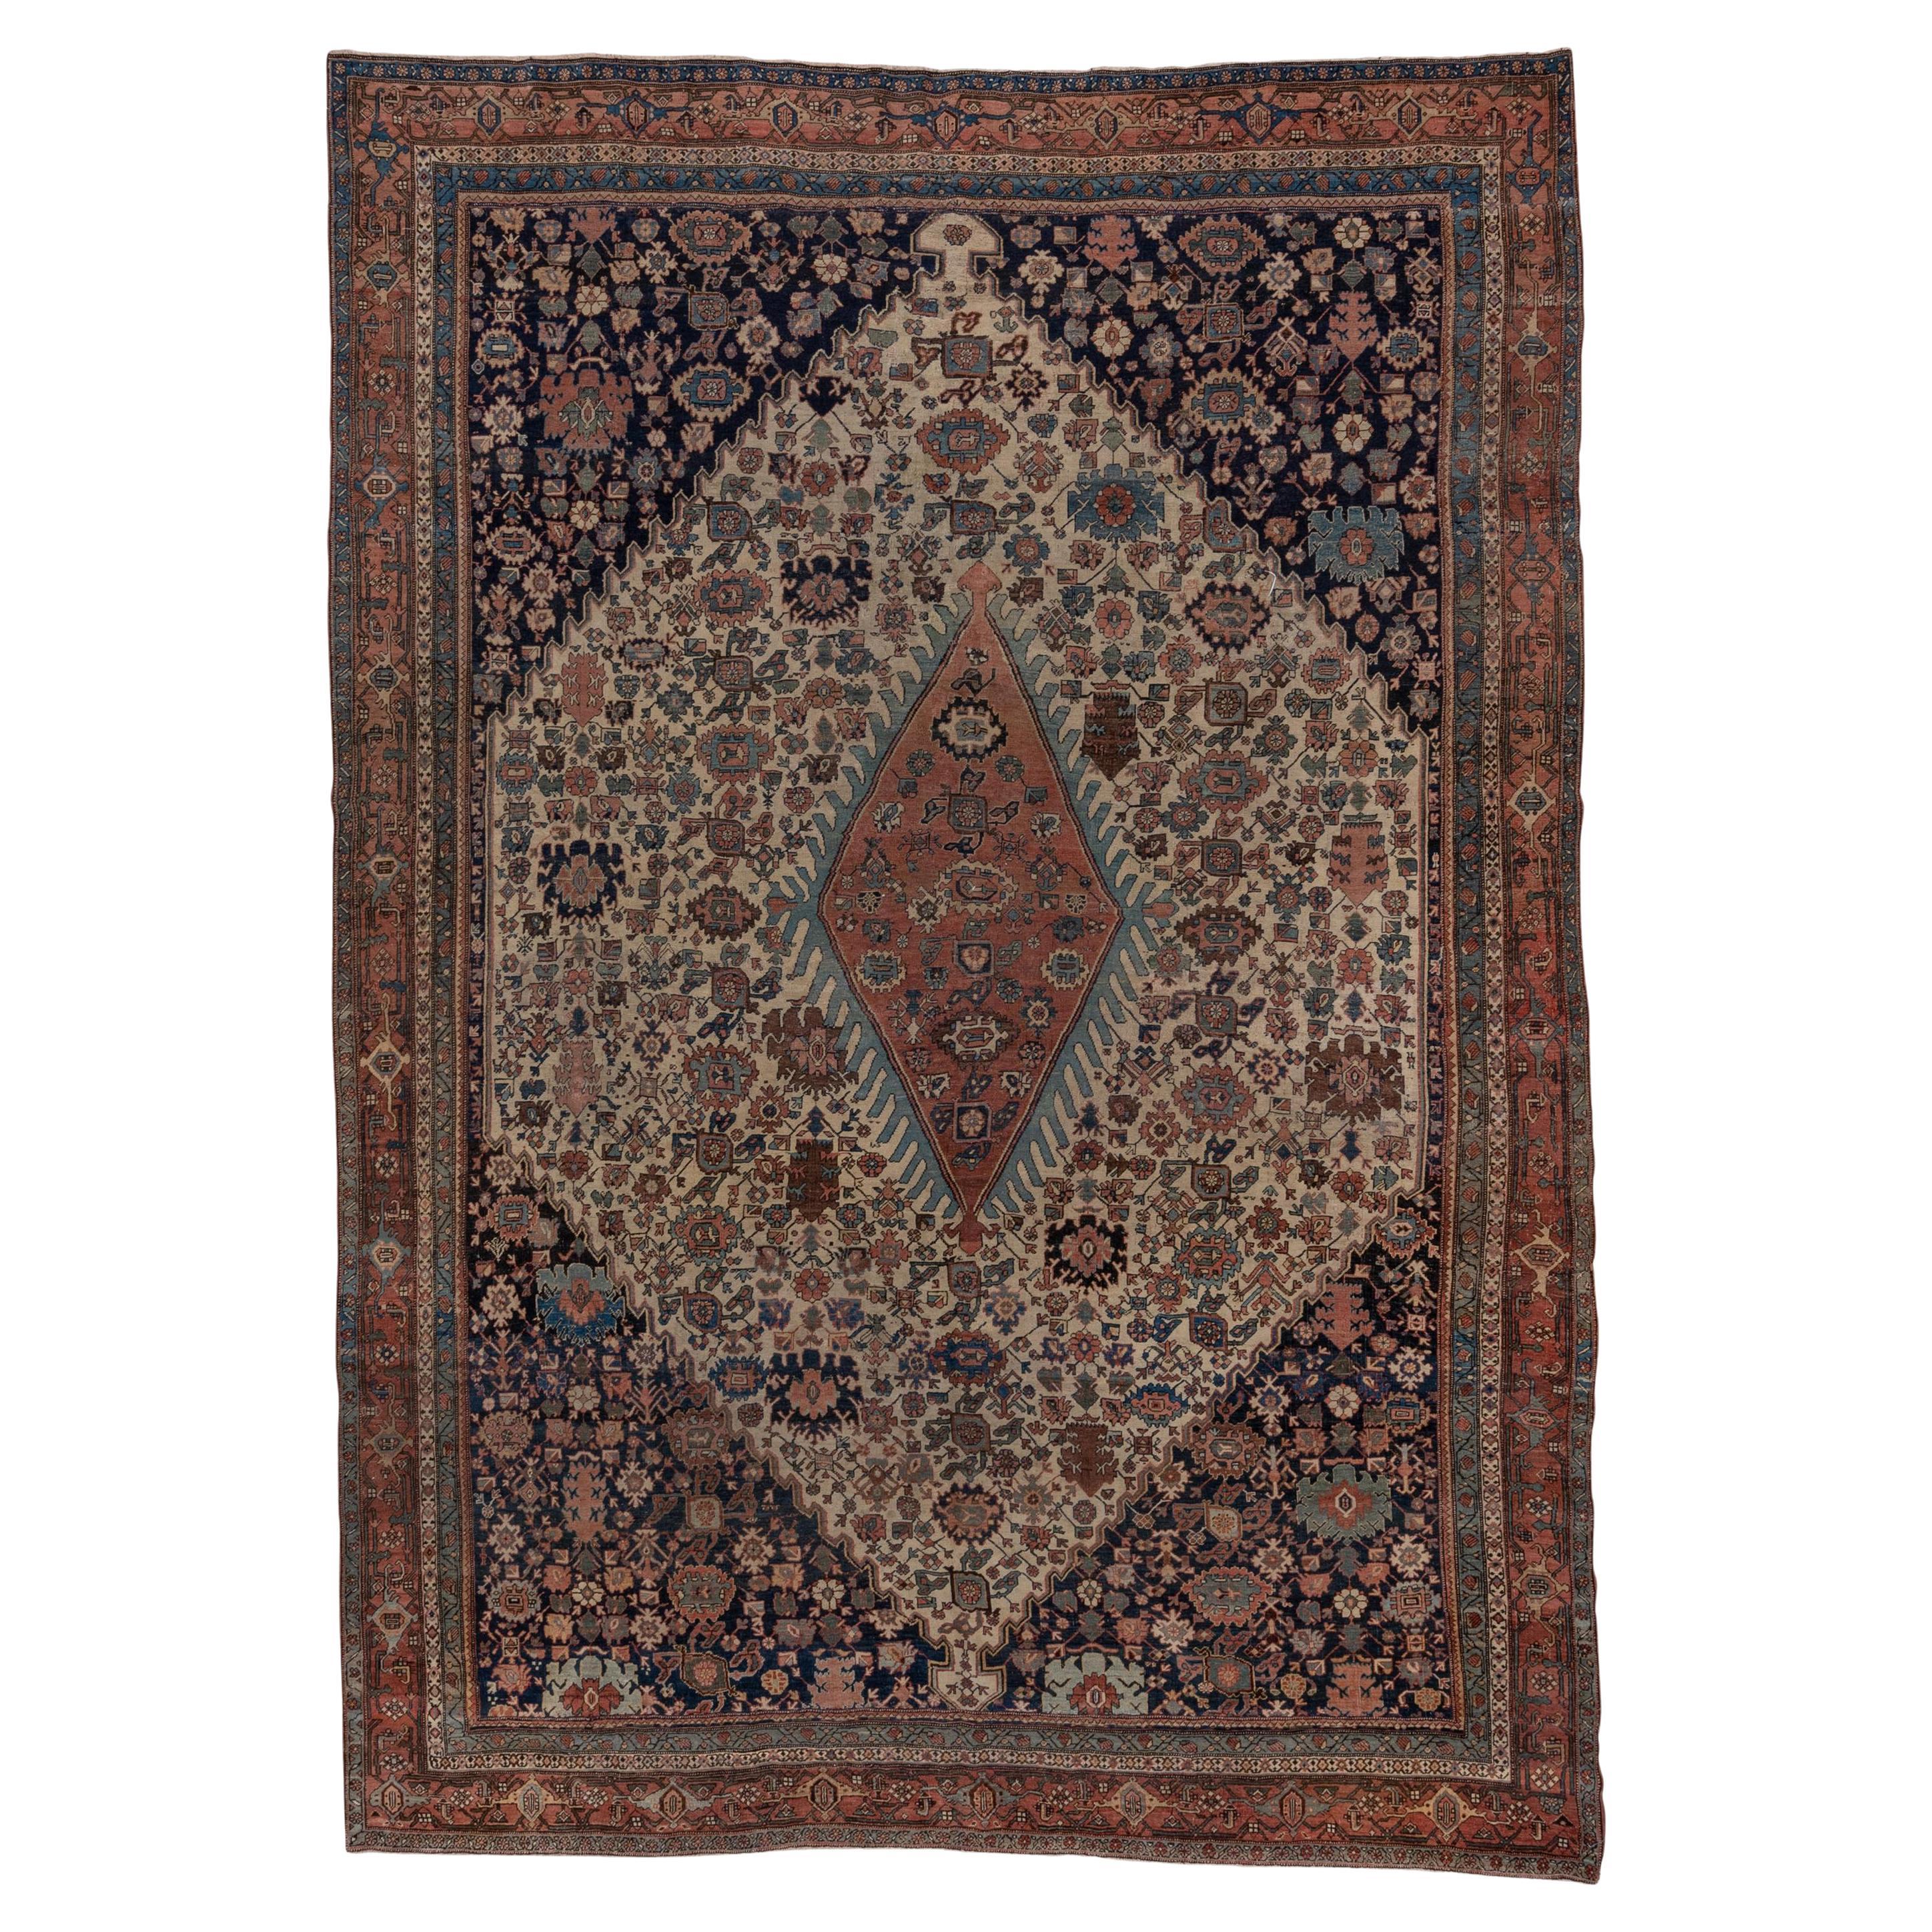 Fine Antique Persian Bidjar Carpet, Rich Colors, Crab Design